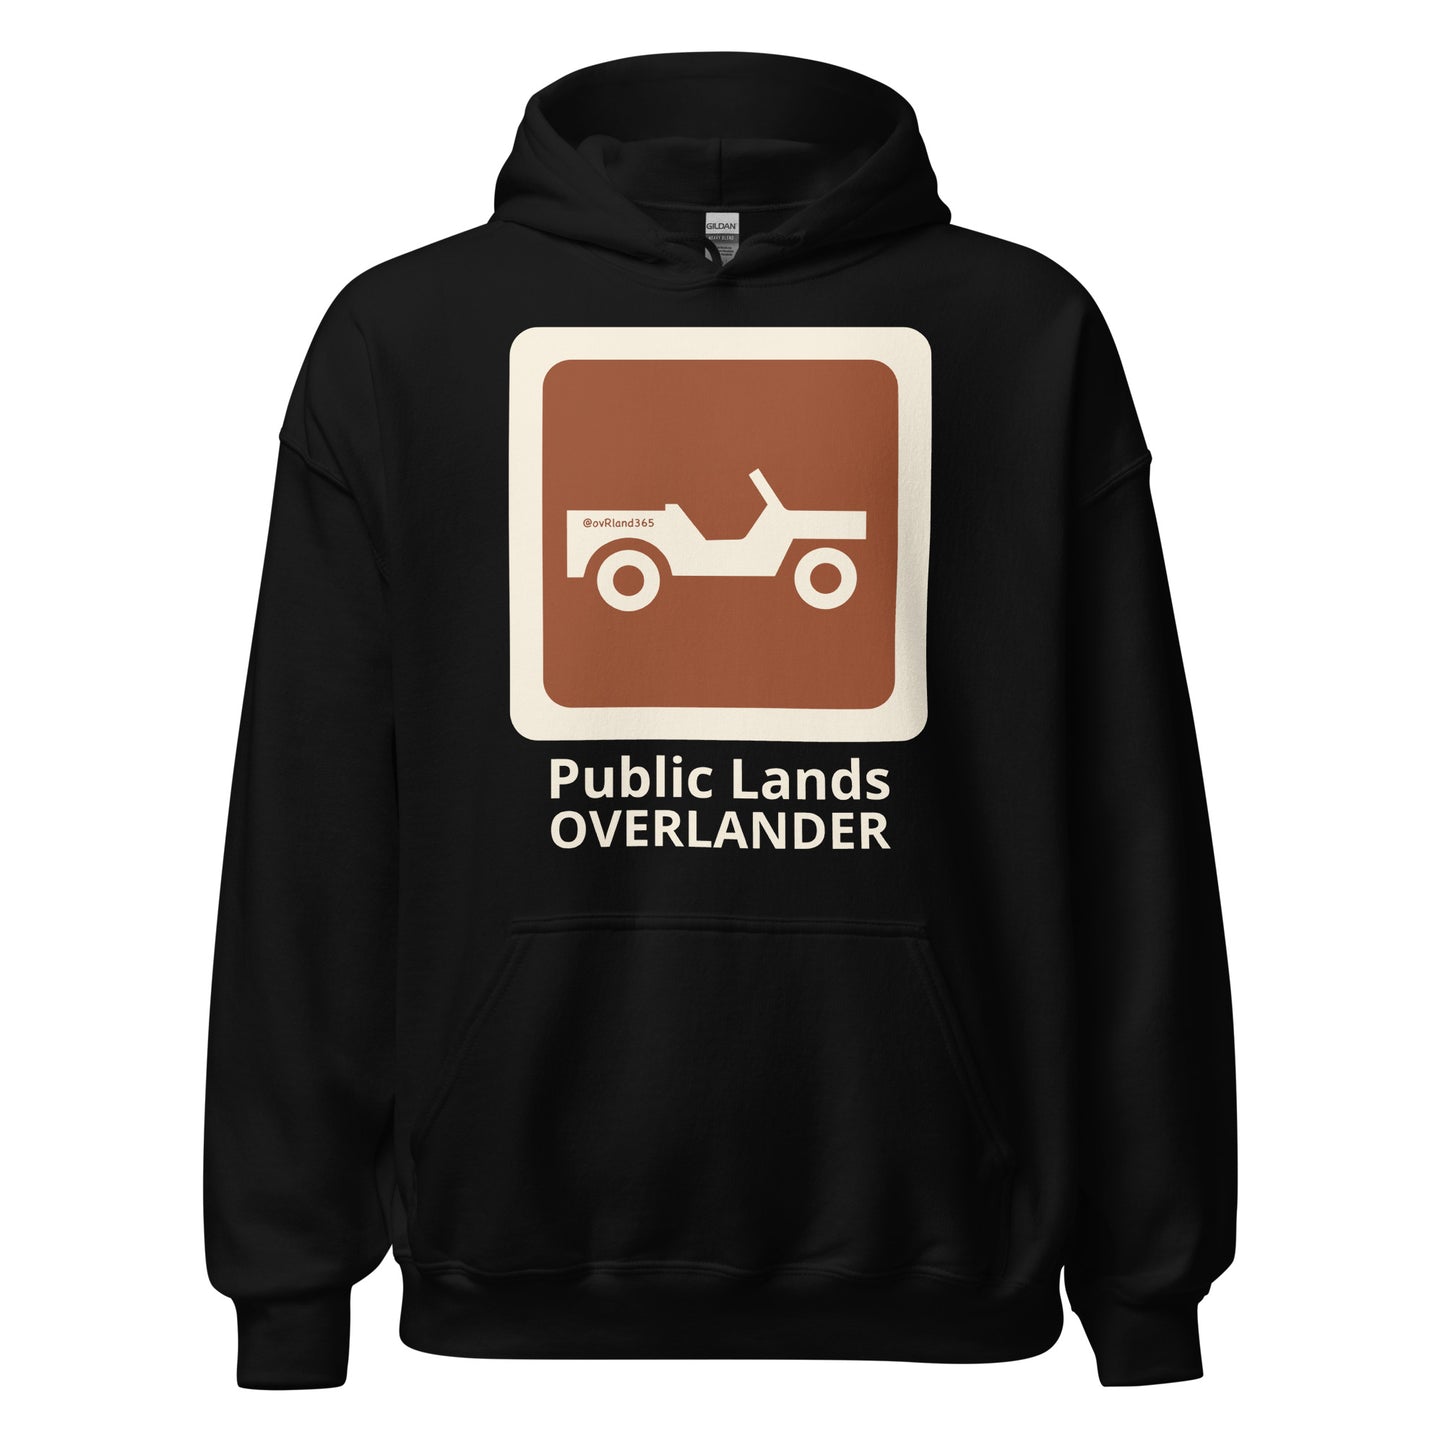 Black Public Lands OVERLANDER hoodie. overland365.com